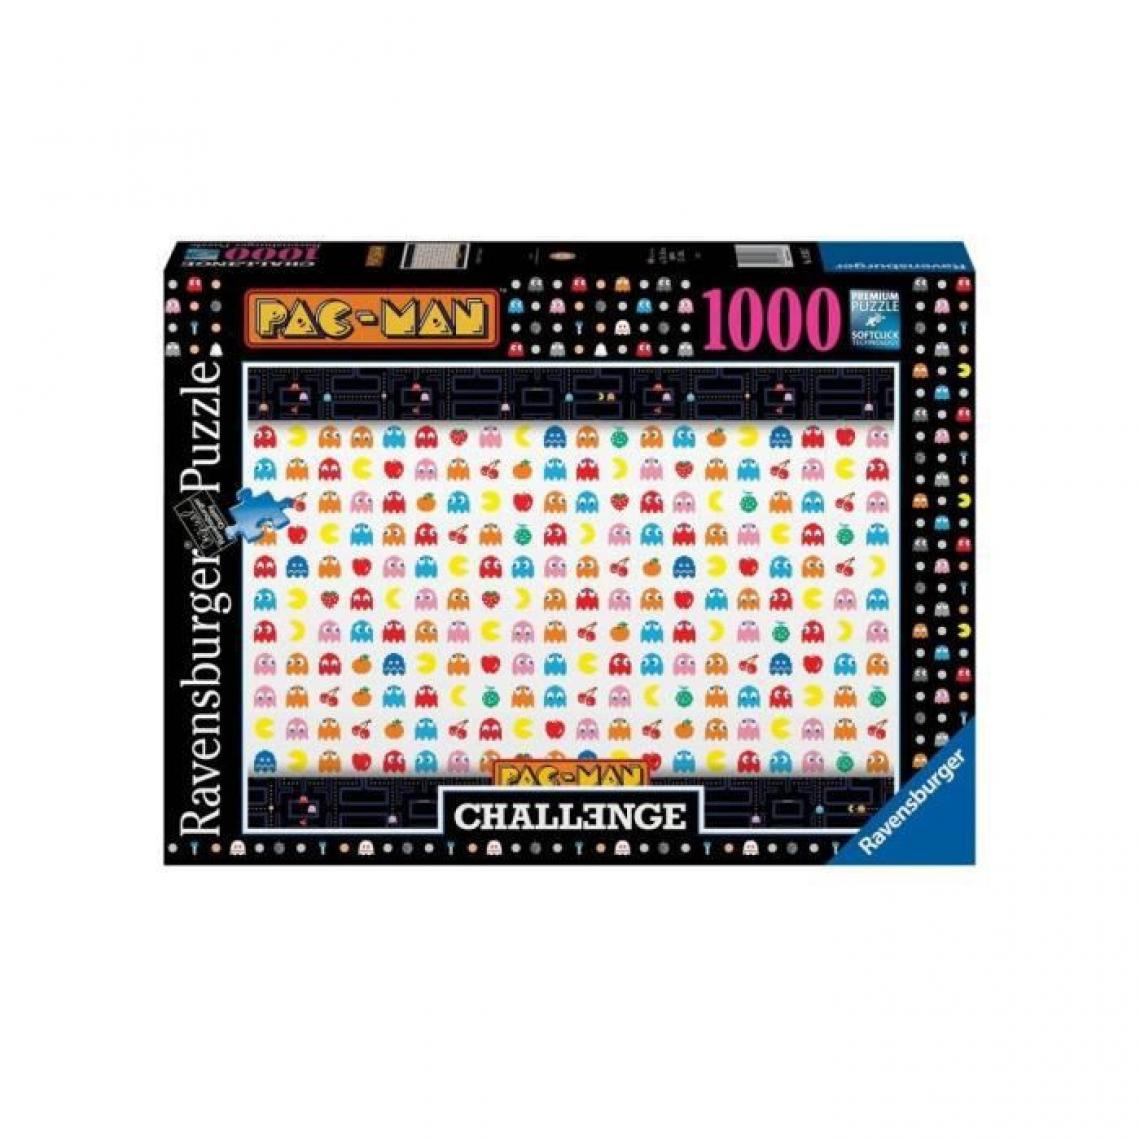 Ravensburger - PAC-MAN - Puzzle 1000 pieces - Pac-Man Challenge Puzzle - Ravensburger - Jeux d'adresse